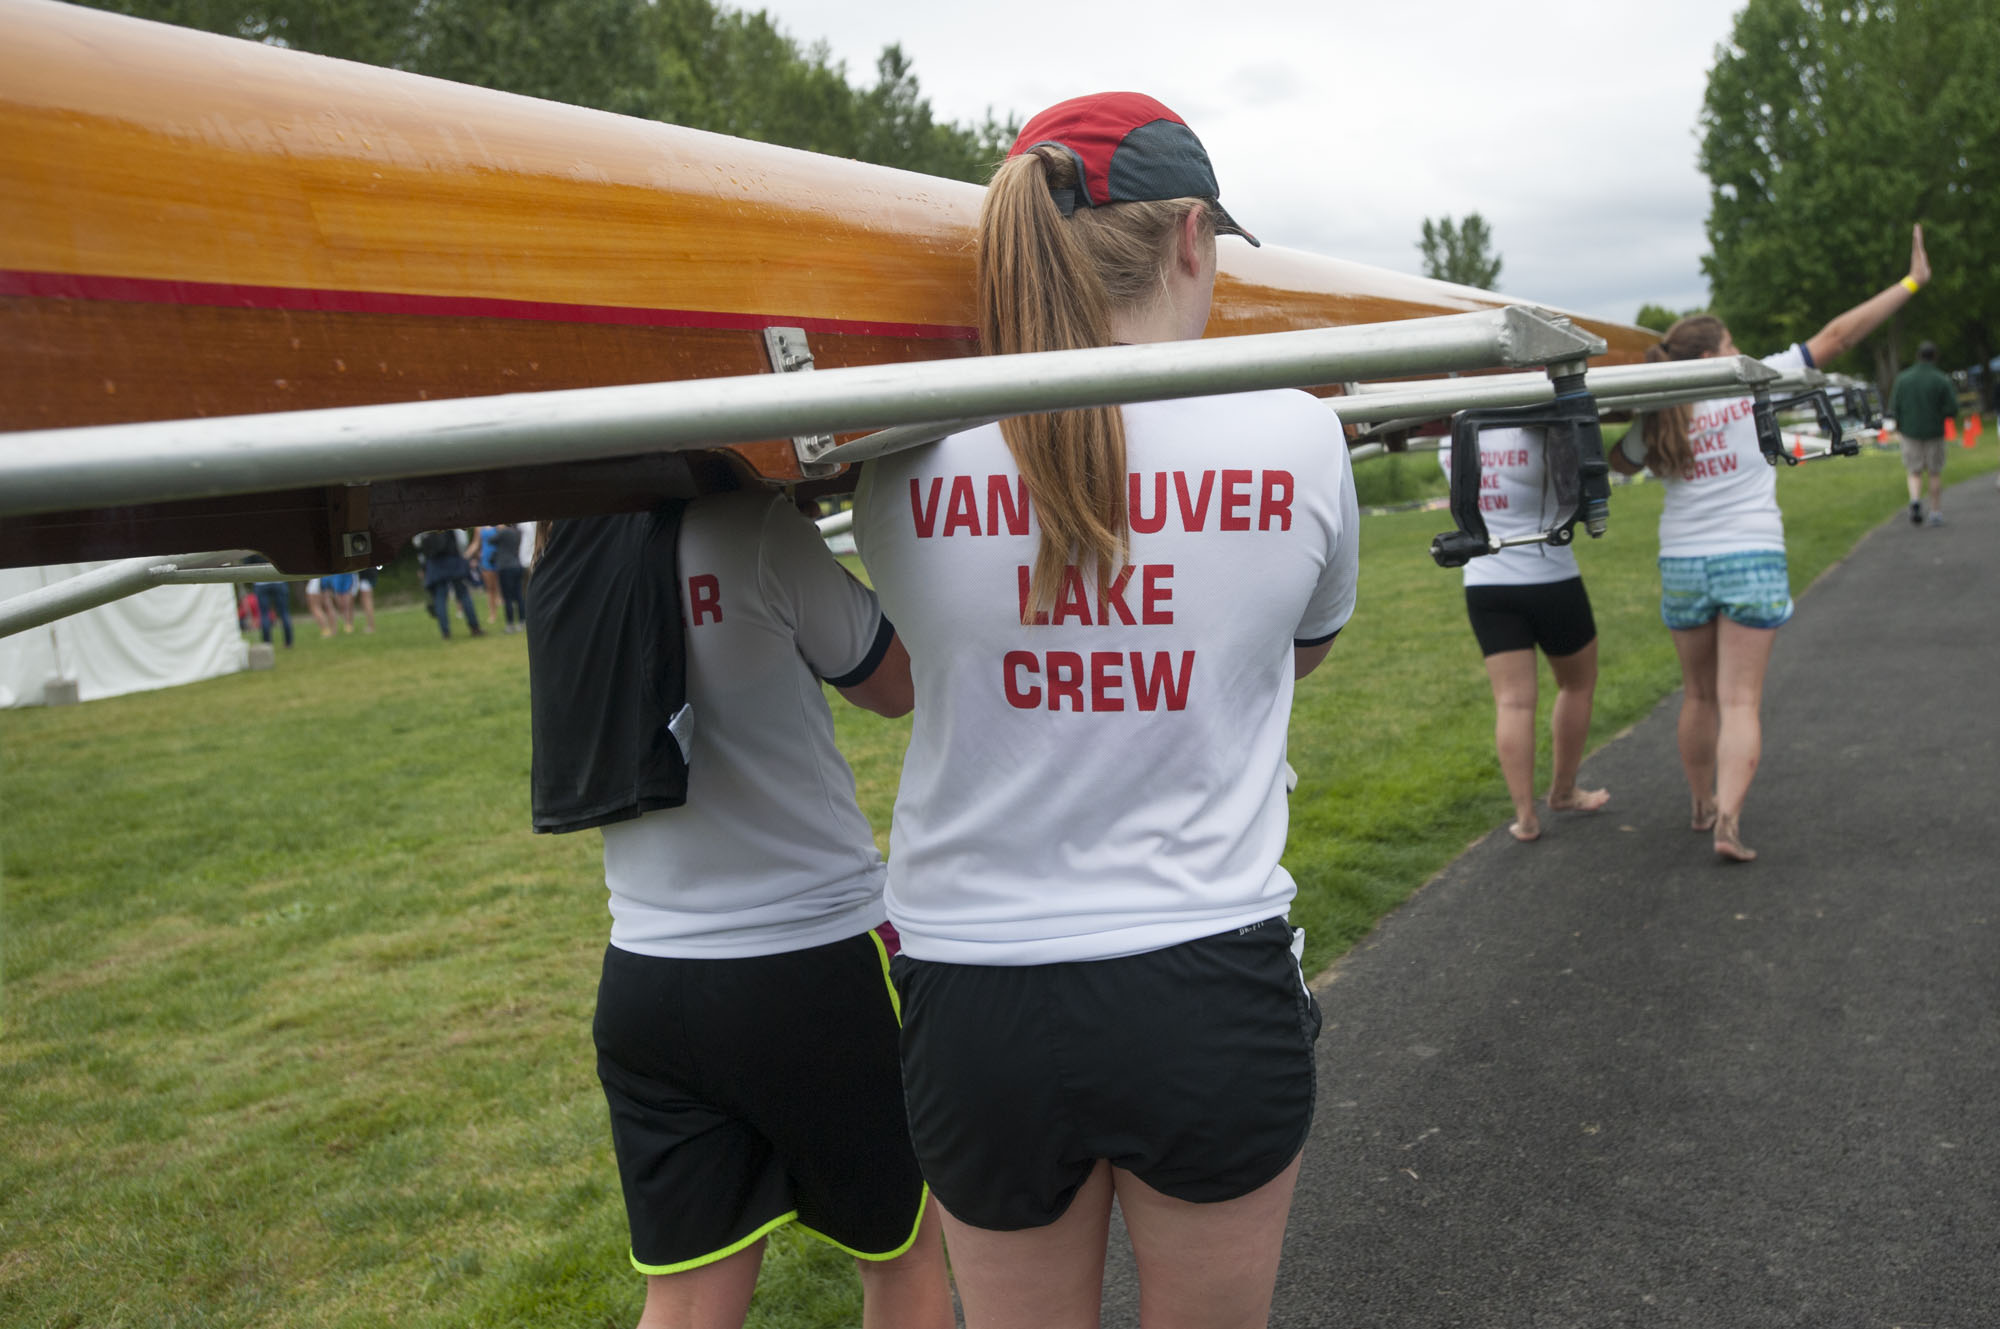 Vancouver Lake Crew members.